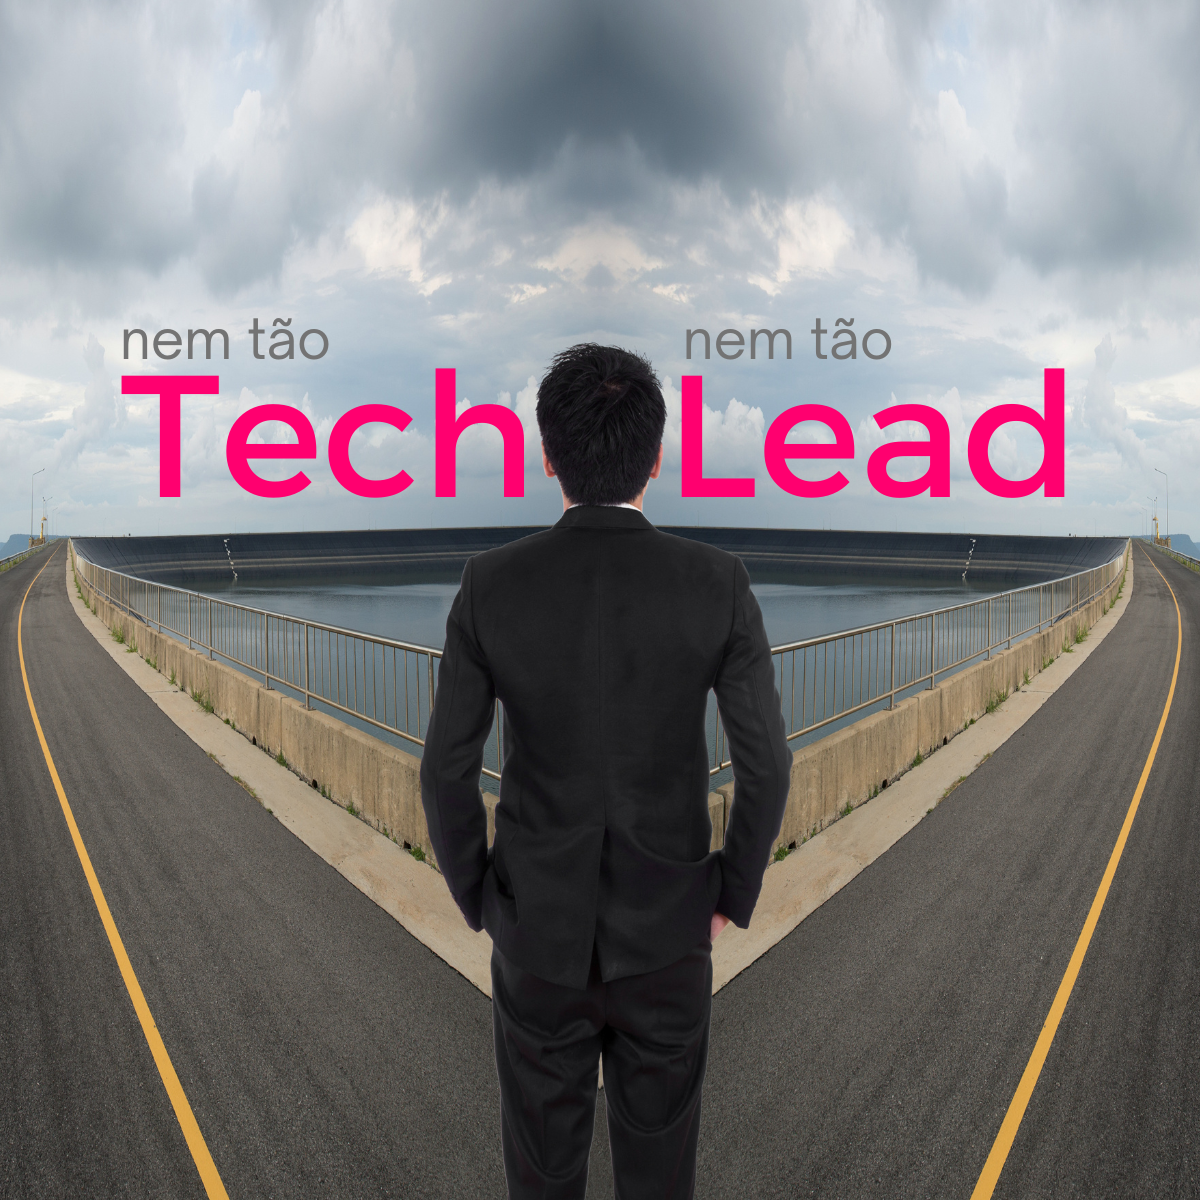 A carreira do Tech Lead. Nem tão técnico e nem tão lead!